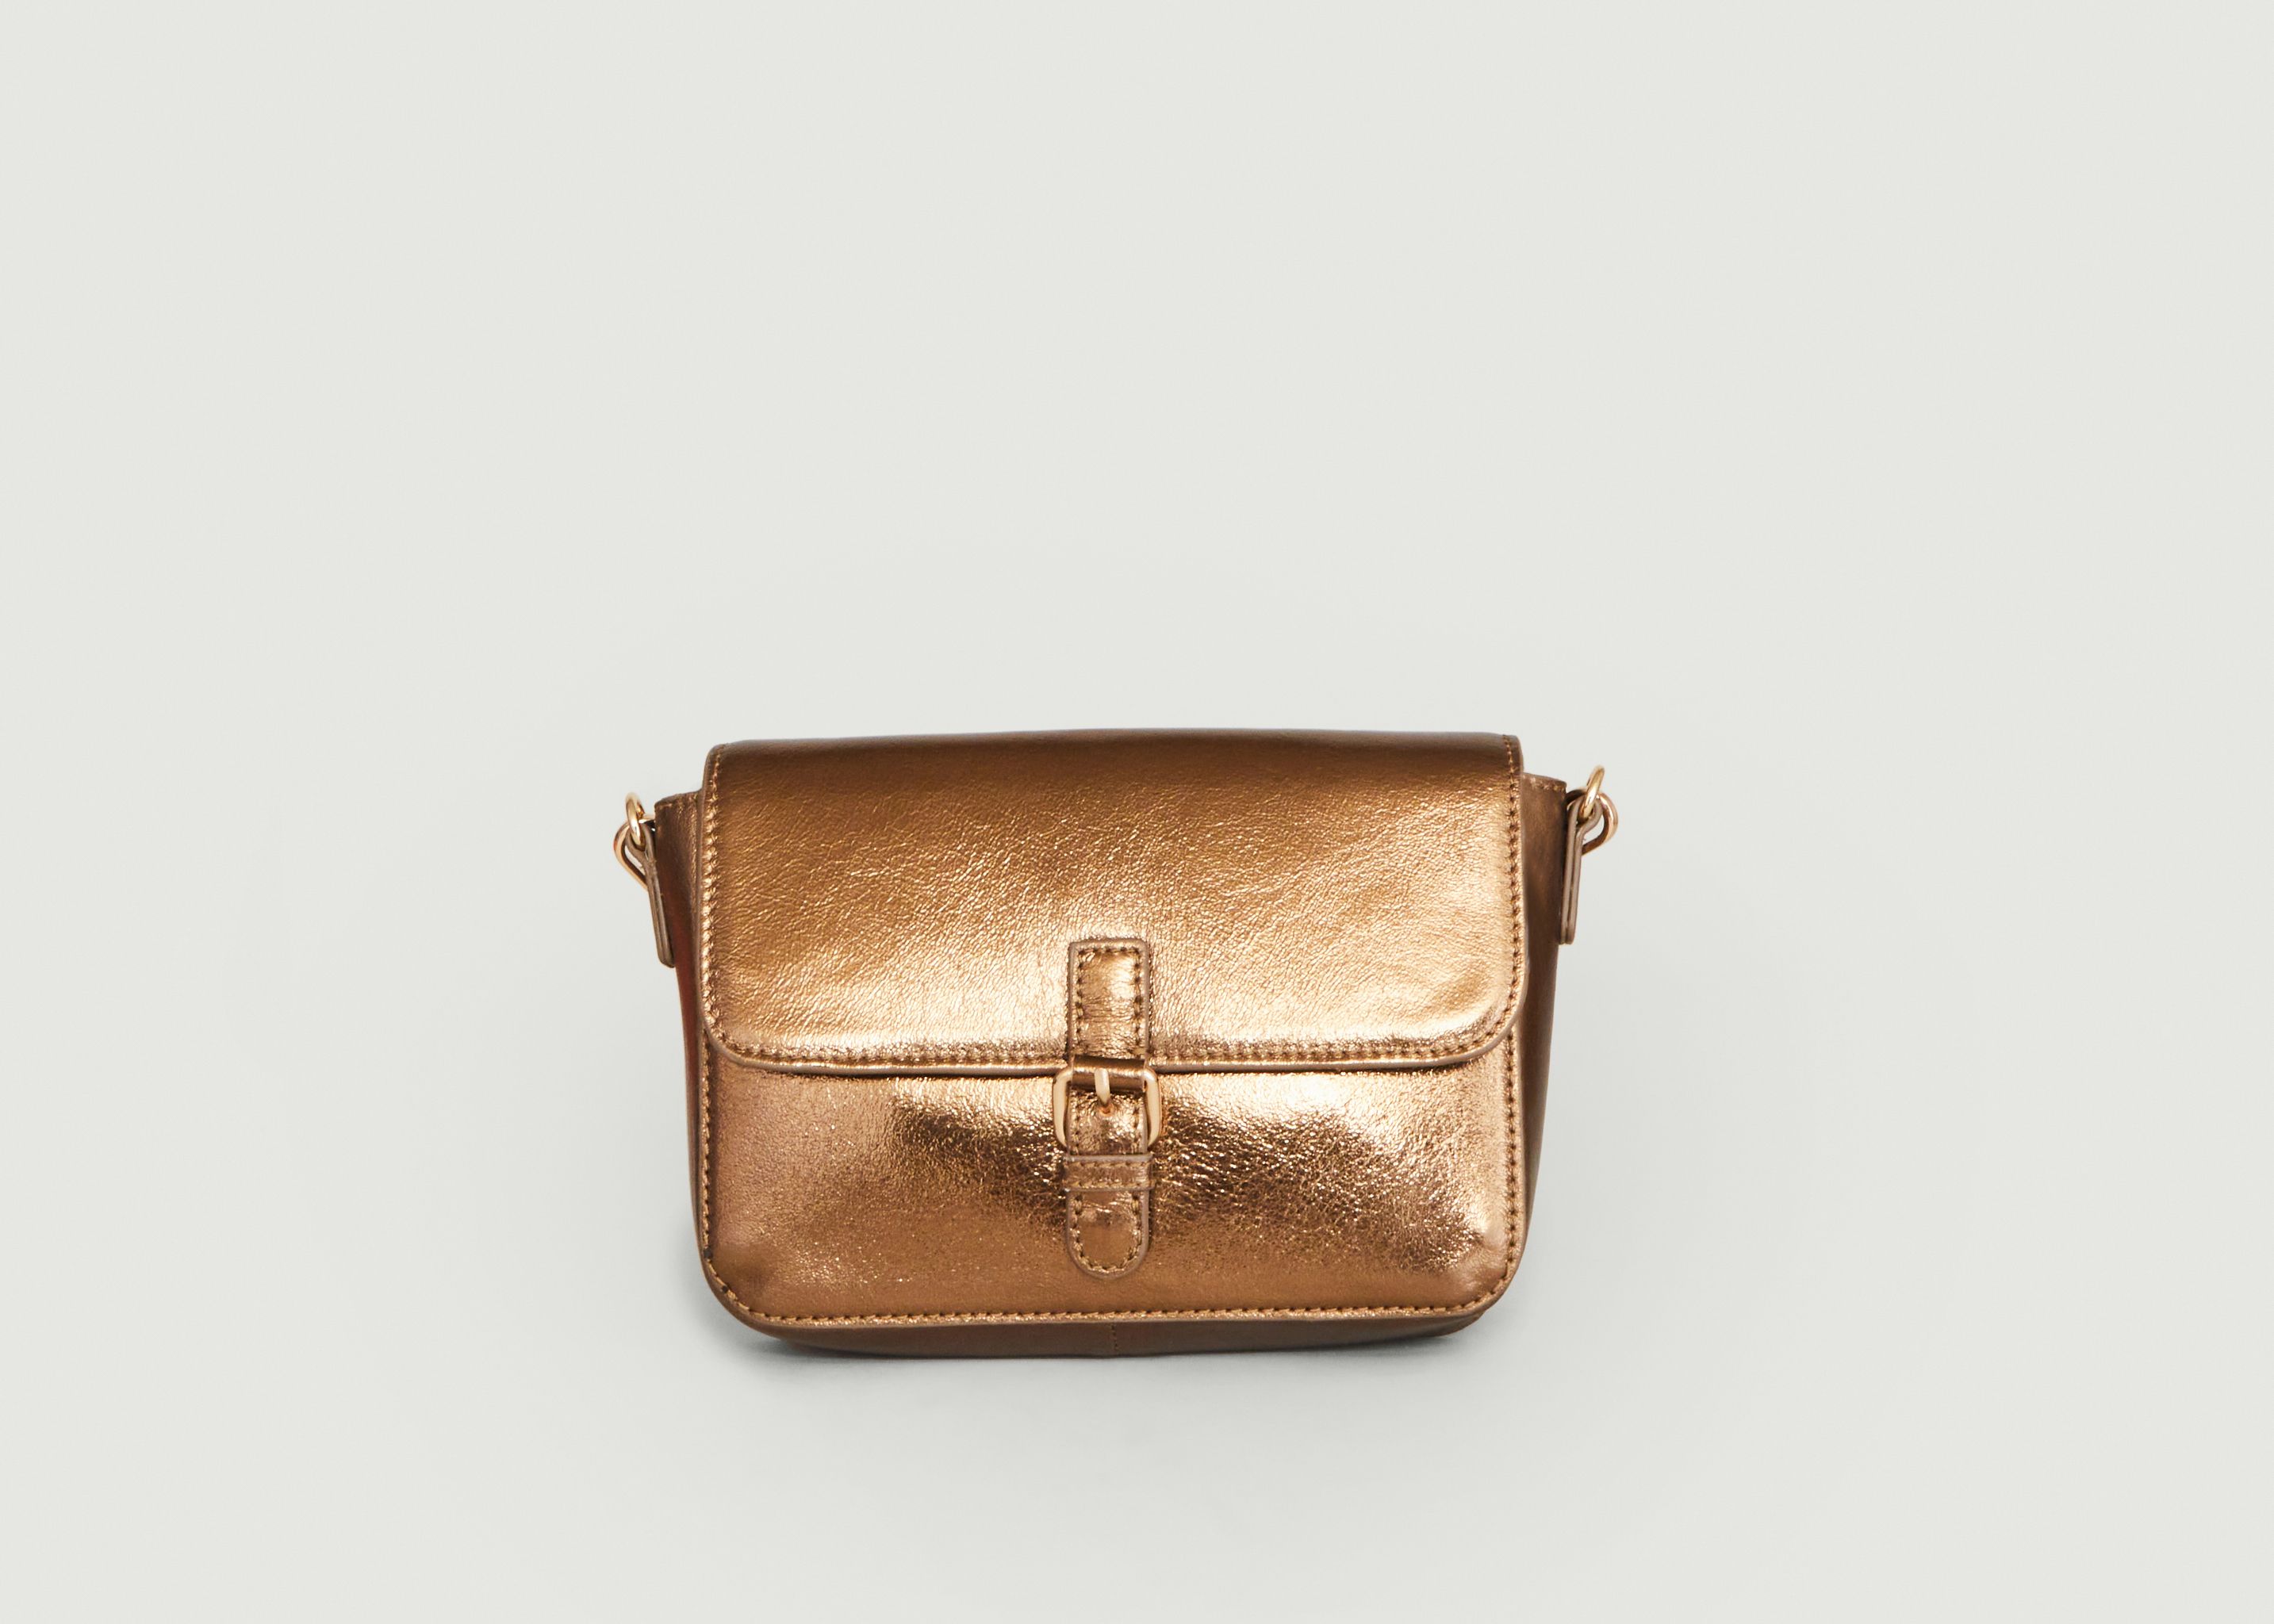 Hyperion metallic leather bag - Petite Mendigote